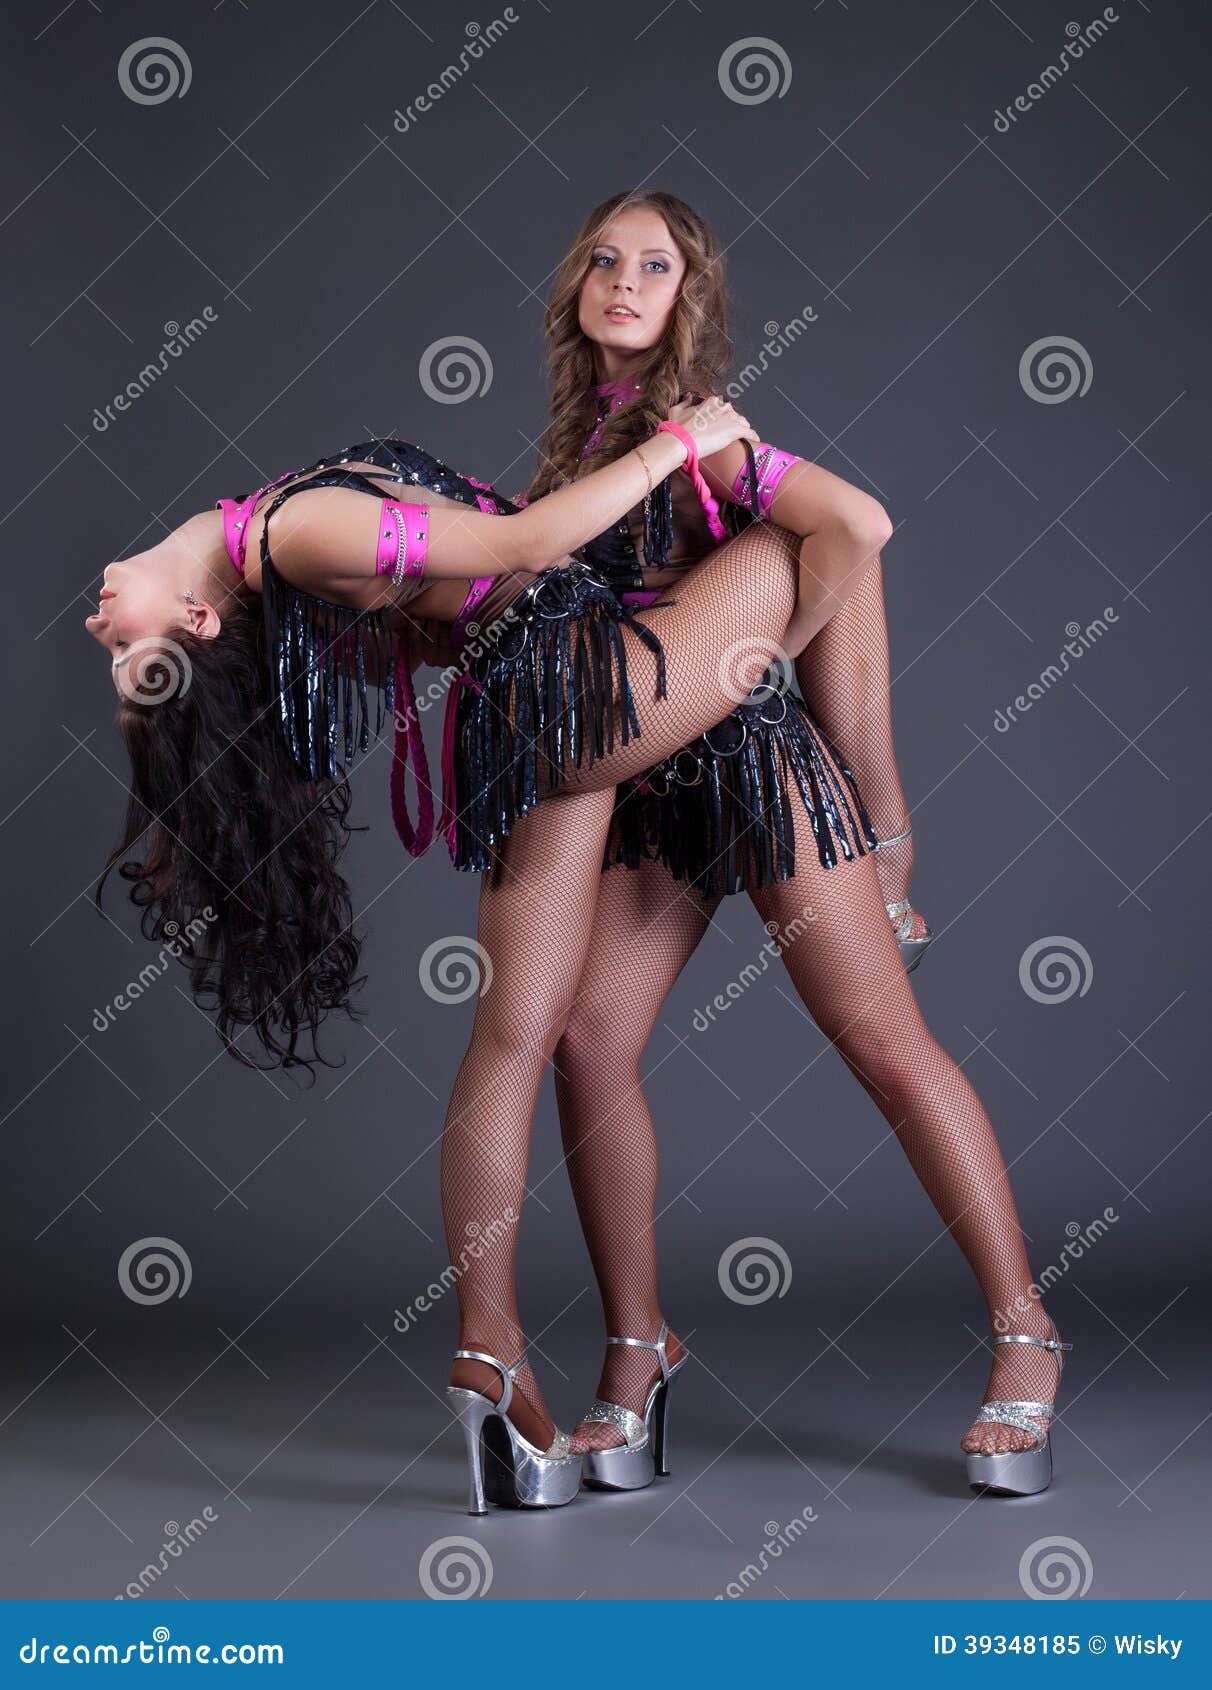 Dancing lesbians